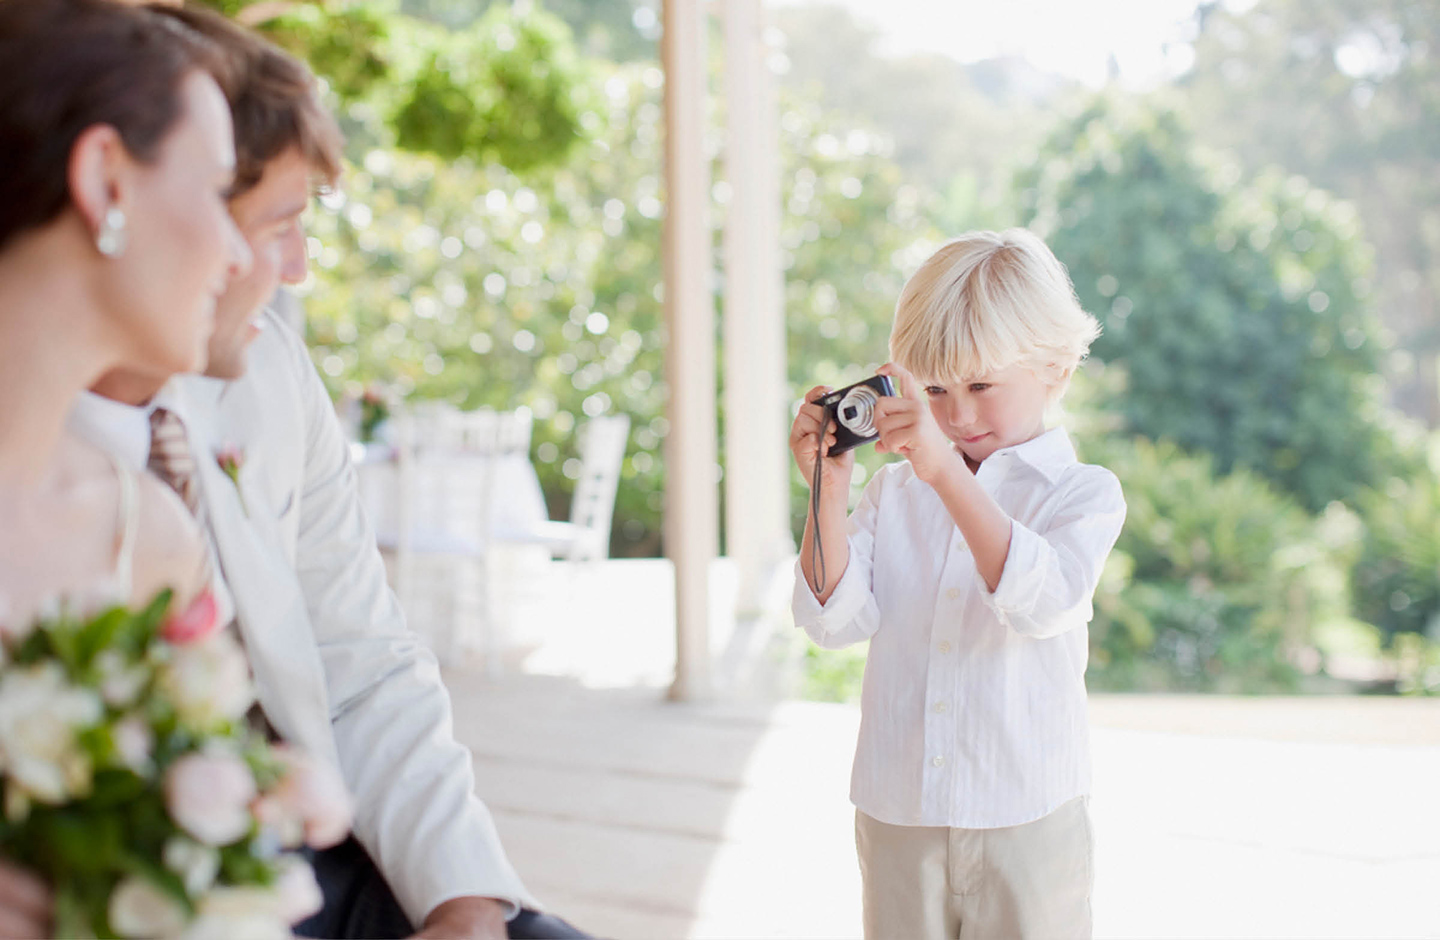 Kleiner Junge beschäftigt schieß Bilder vom Brautpaar mit einer kleinen Kamera. 